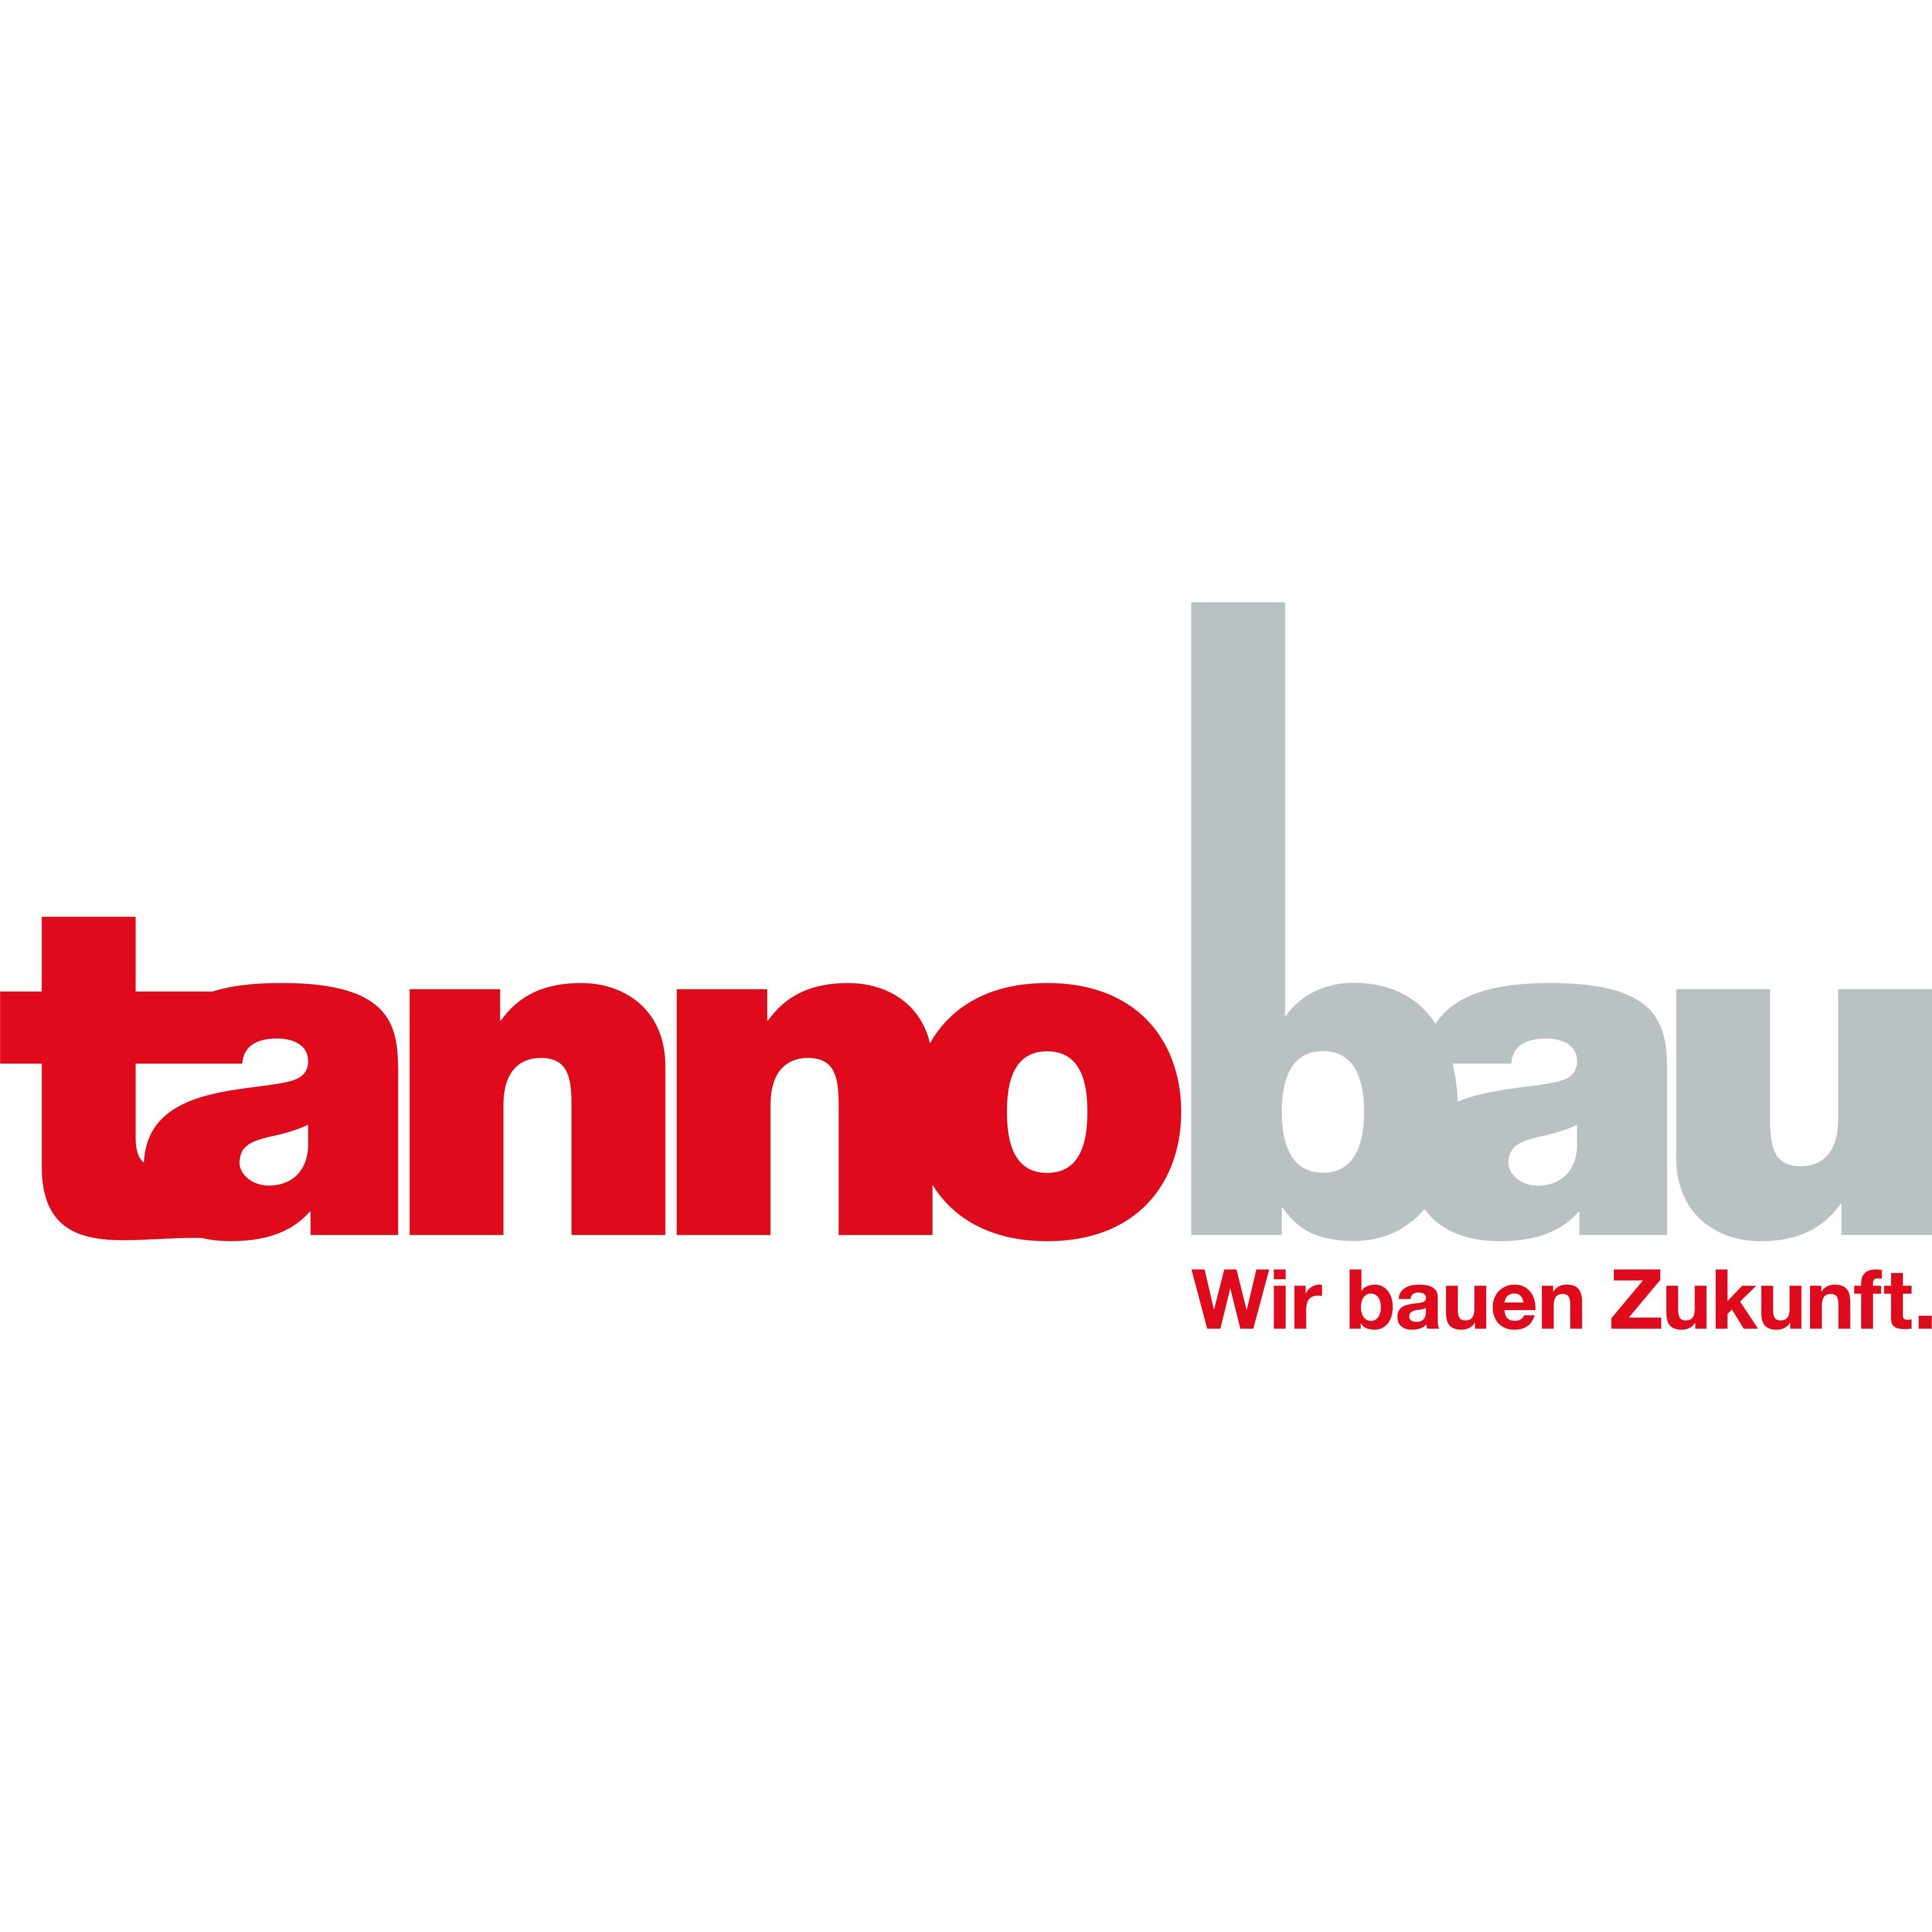 tannobau ag Logo